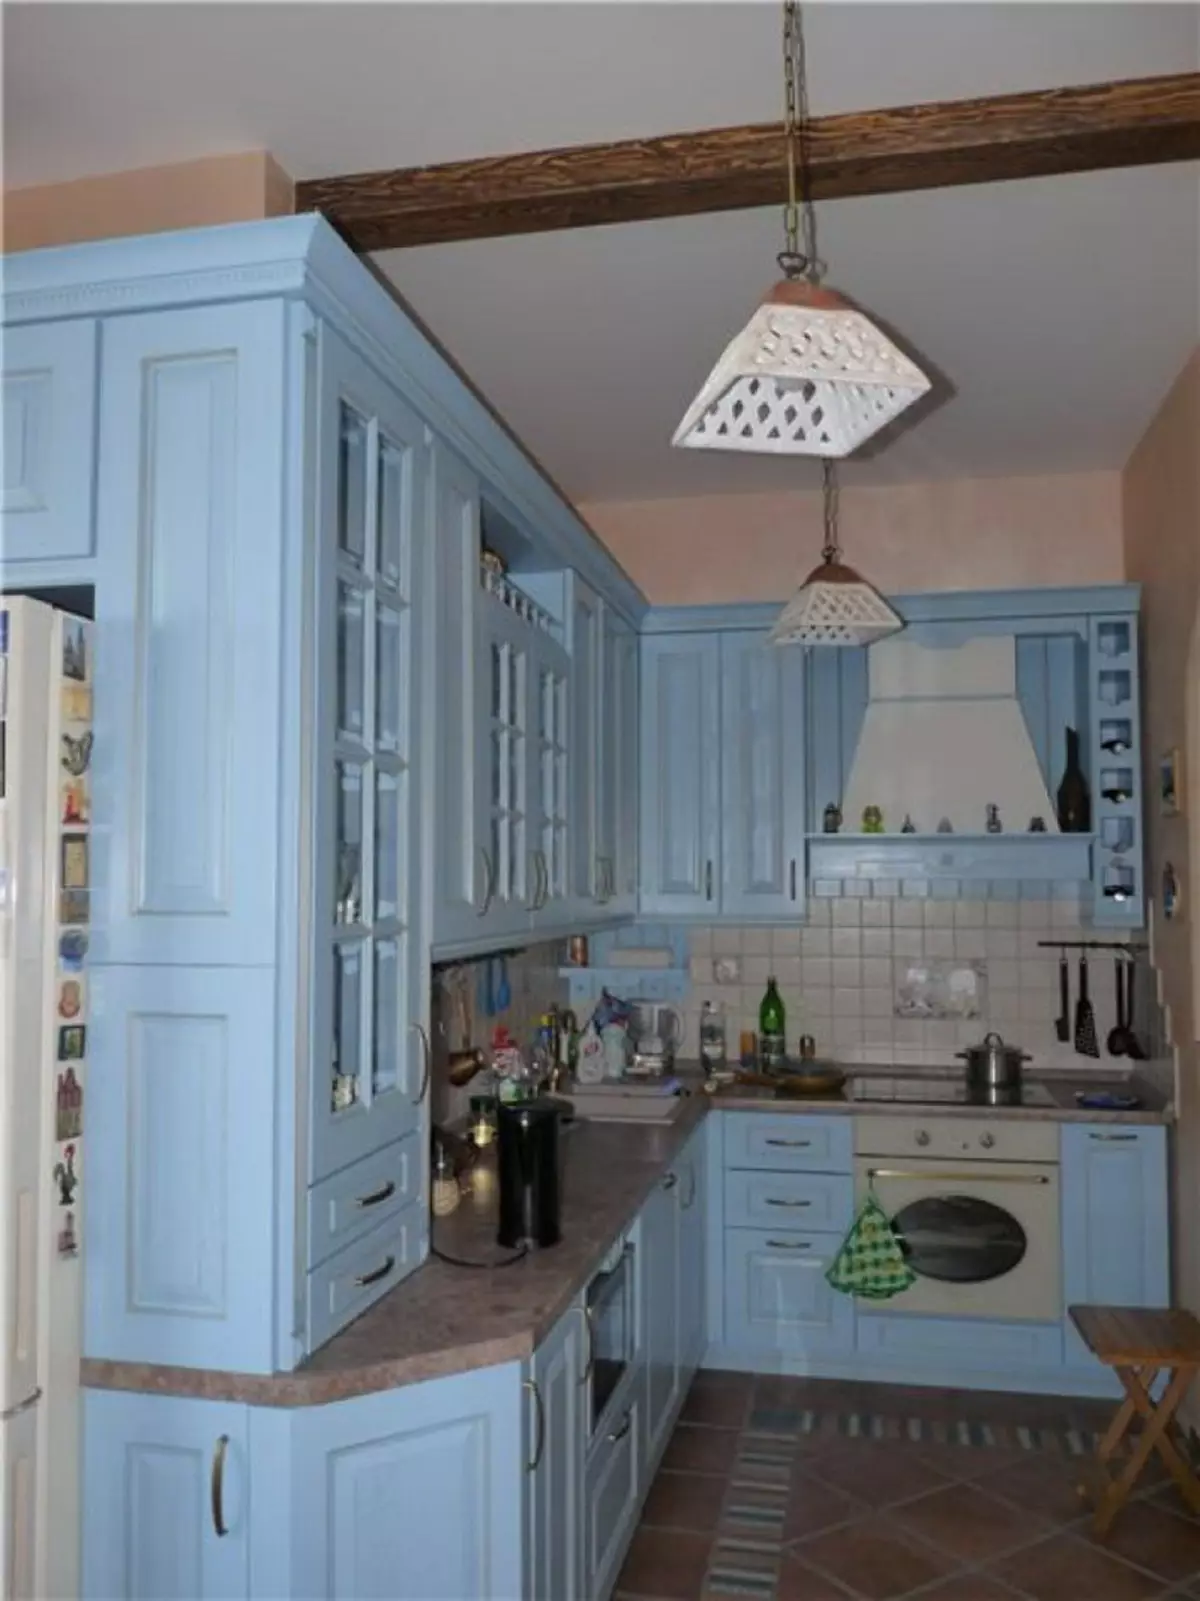 藍廚房（82張照片）：在藍色廚房套裝內部合併哪種顏色？淺藍色和深藍色色調的廚房設計 9555_67